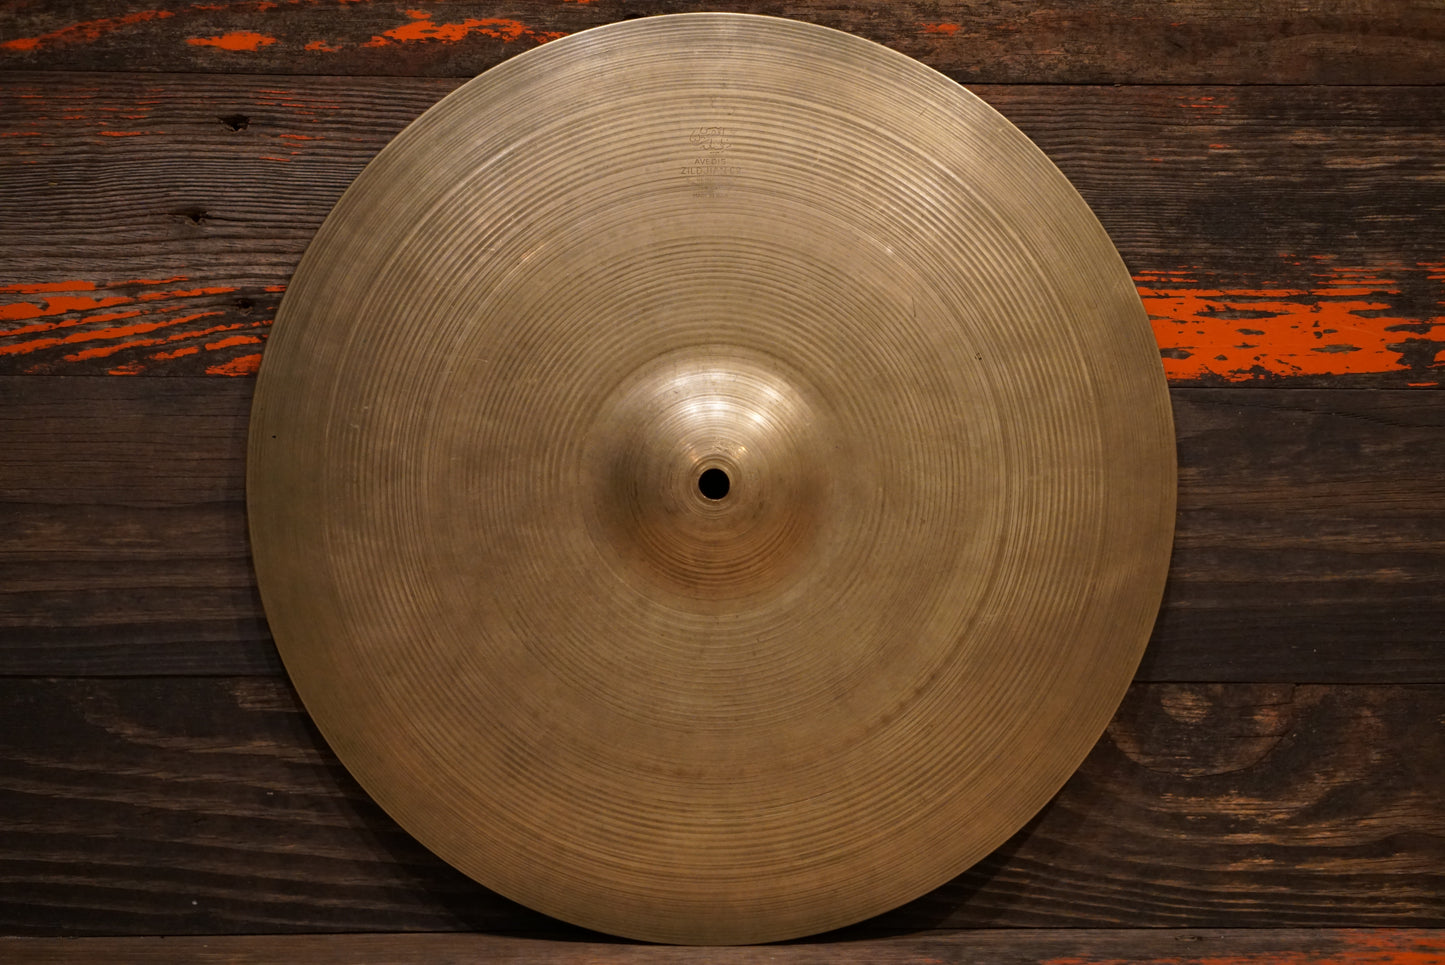 Zildjian 16" Avedis 1960s Hi-Hat Single Cymbal - 1602g